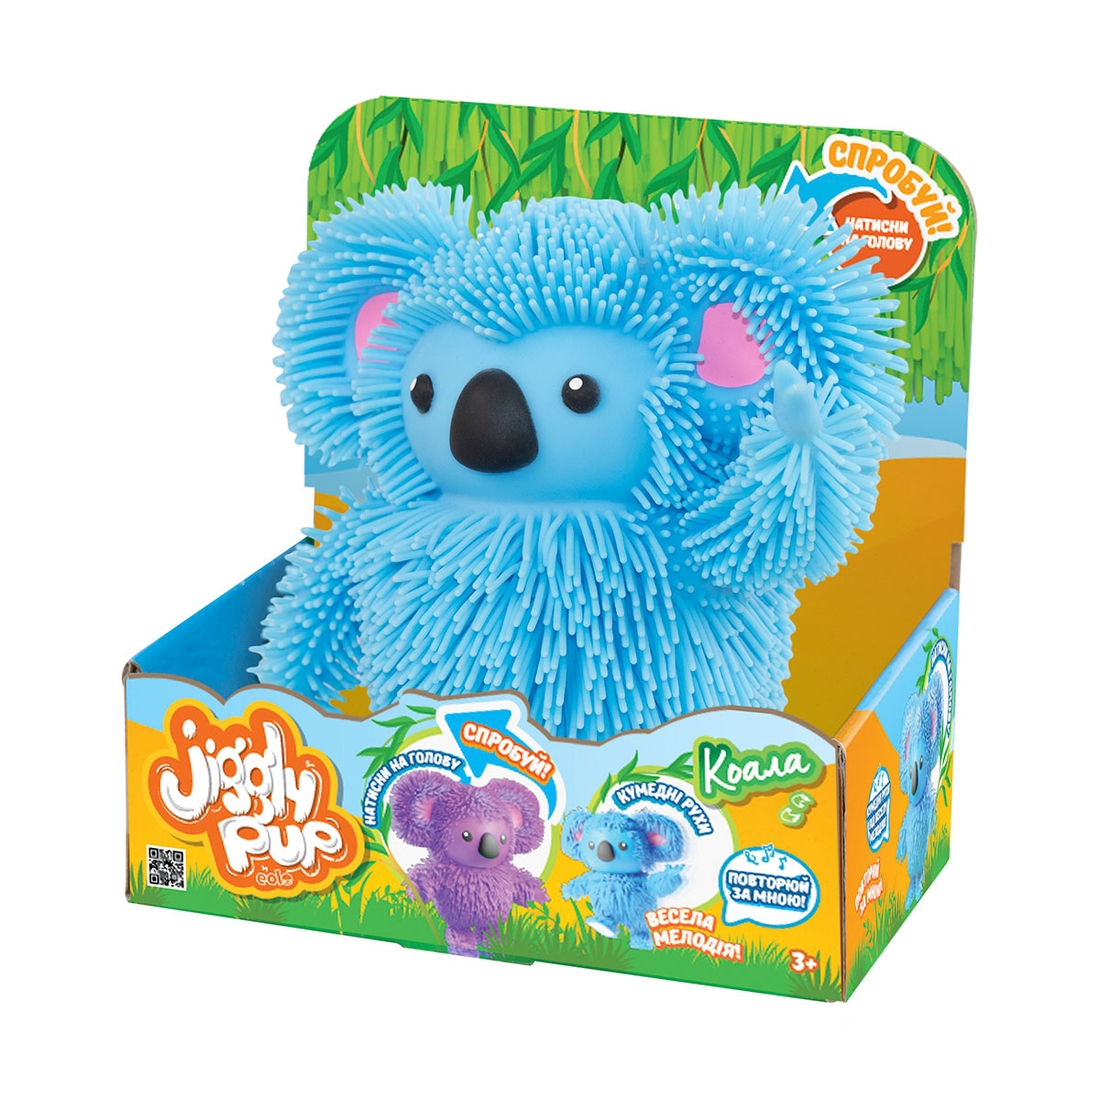 Фото Интерактивная игрушка JIGGLY PUP - зажигательная КОАЛА (голубая) JP007-BL (6900006598409)